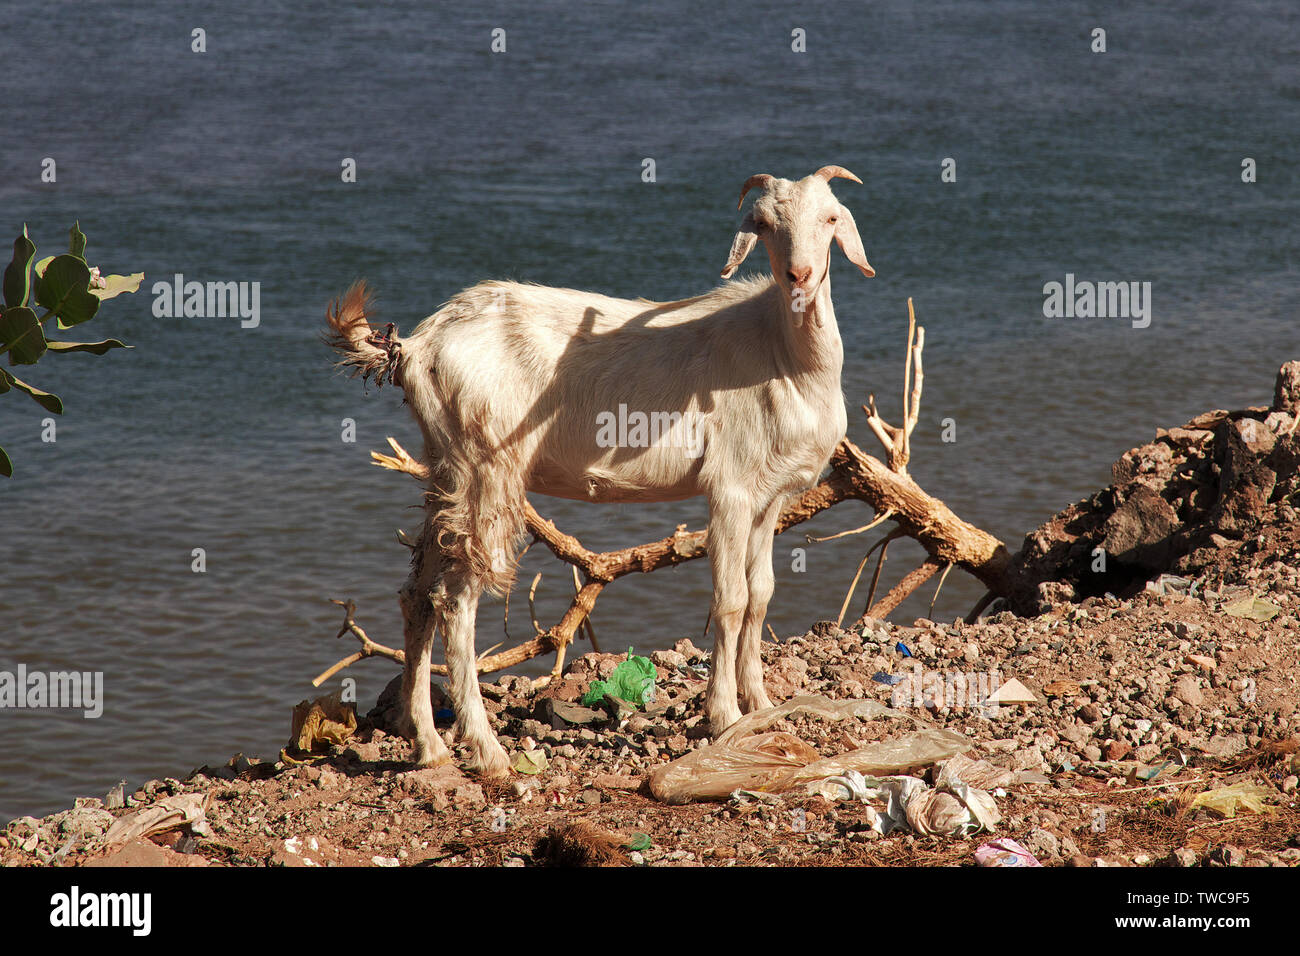 Goat by the Nile river, Khartoum, Sudan Stock Photo